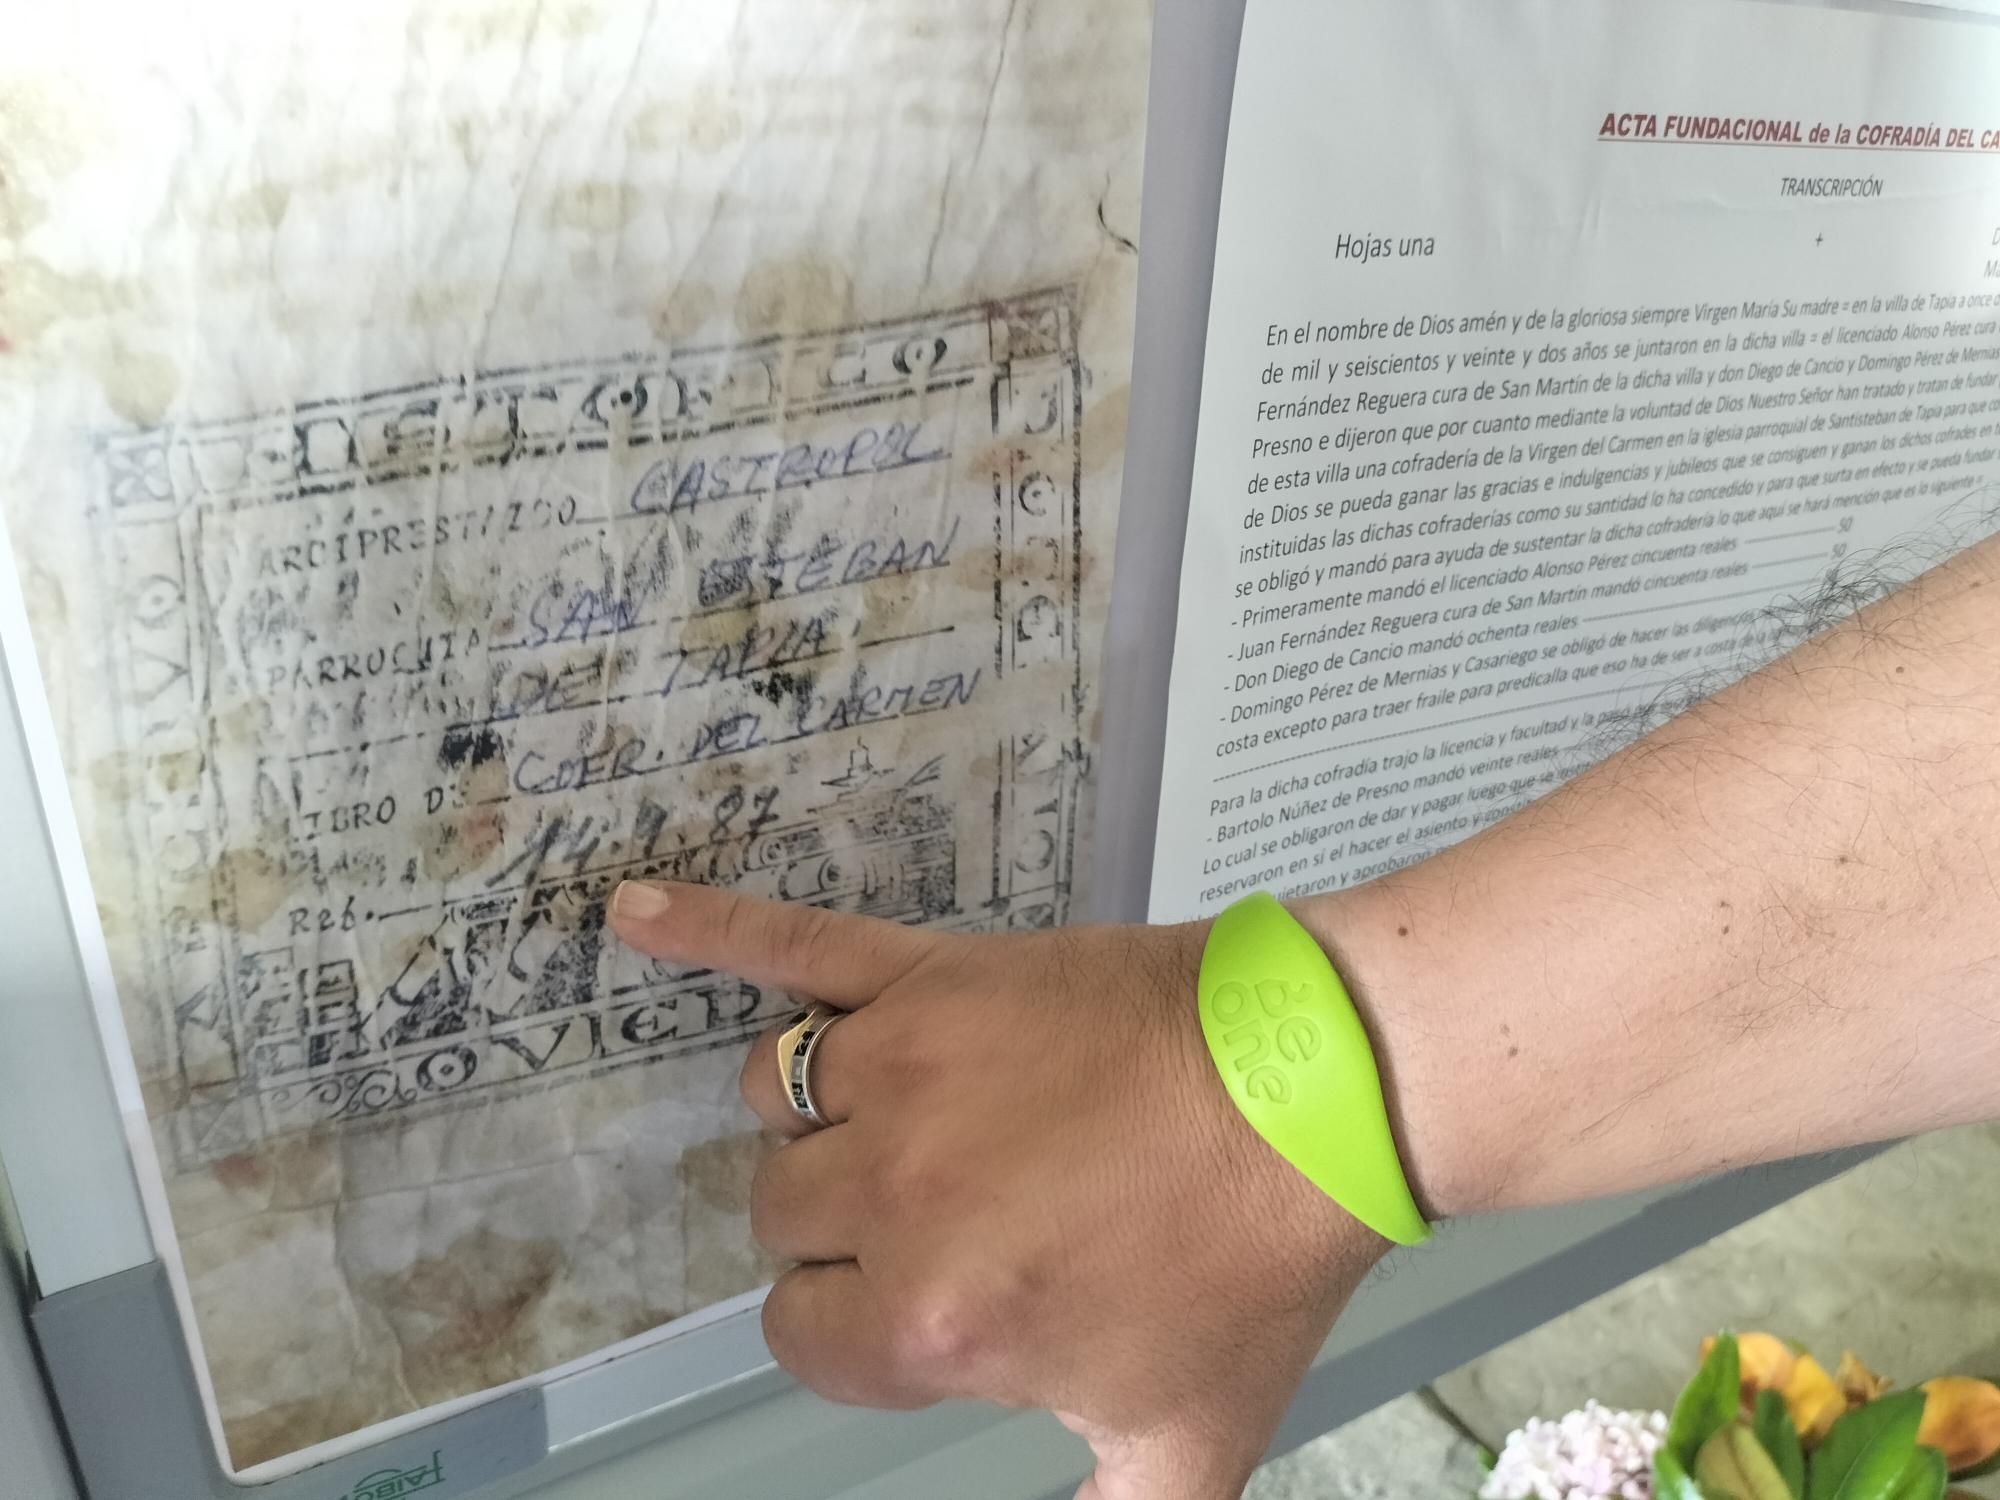 Tapia muestra una exposición histórica: los manucristos de la creación de la Cofradía del Carmen, hace 400 años